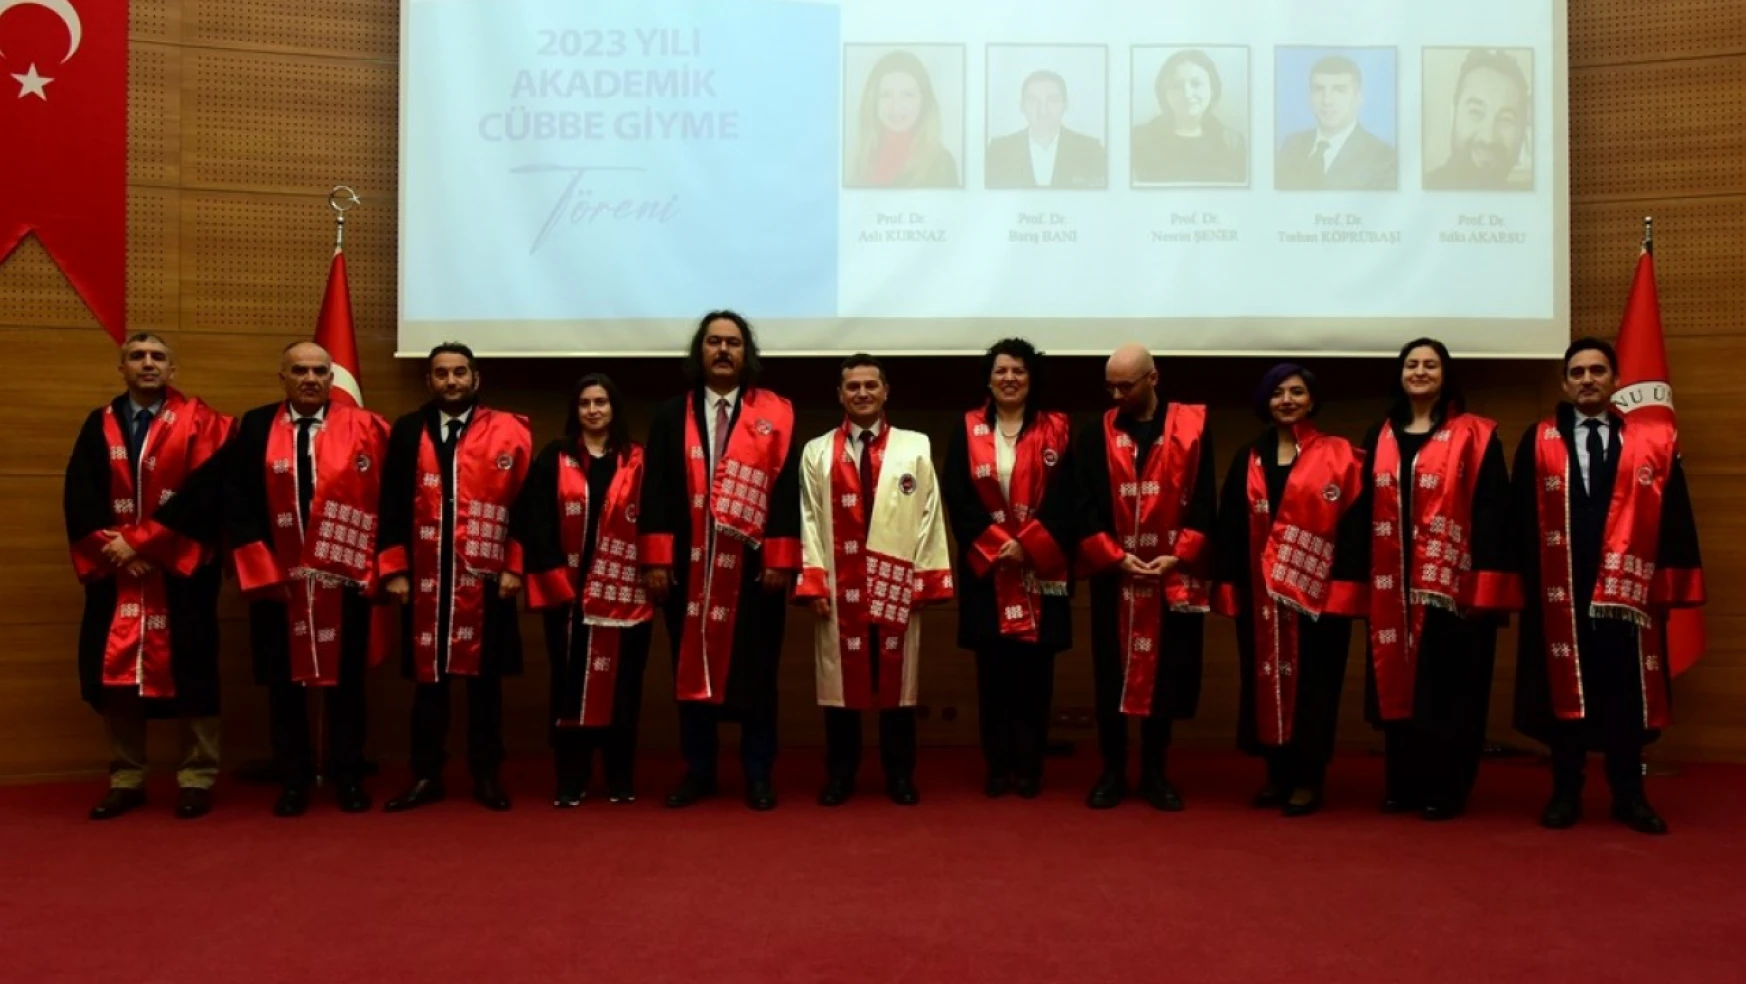 Kastamonu Üniversitesi'nde akademisyenler cübbelerini giydi